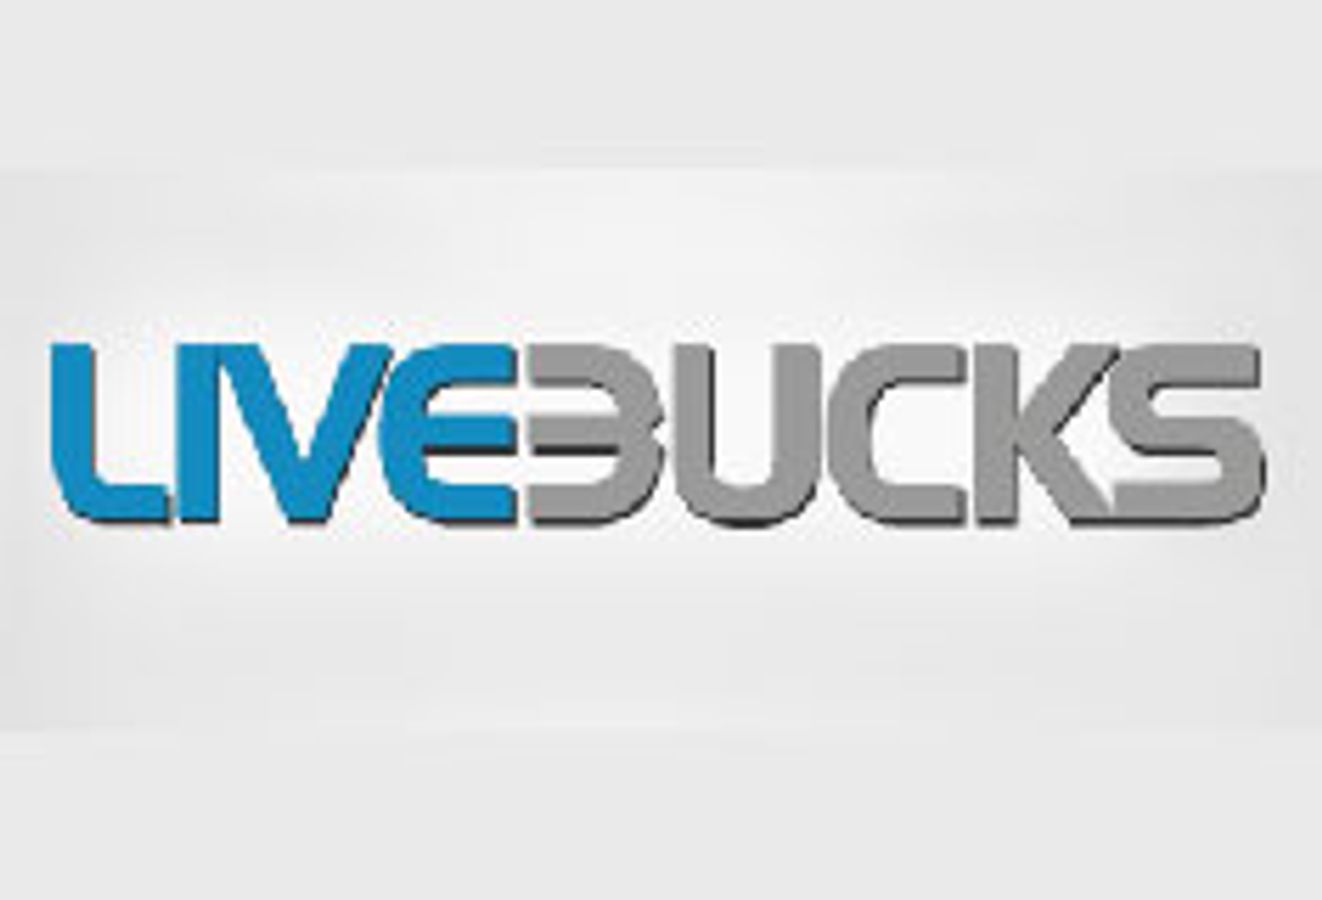 LiveBucks.com